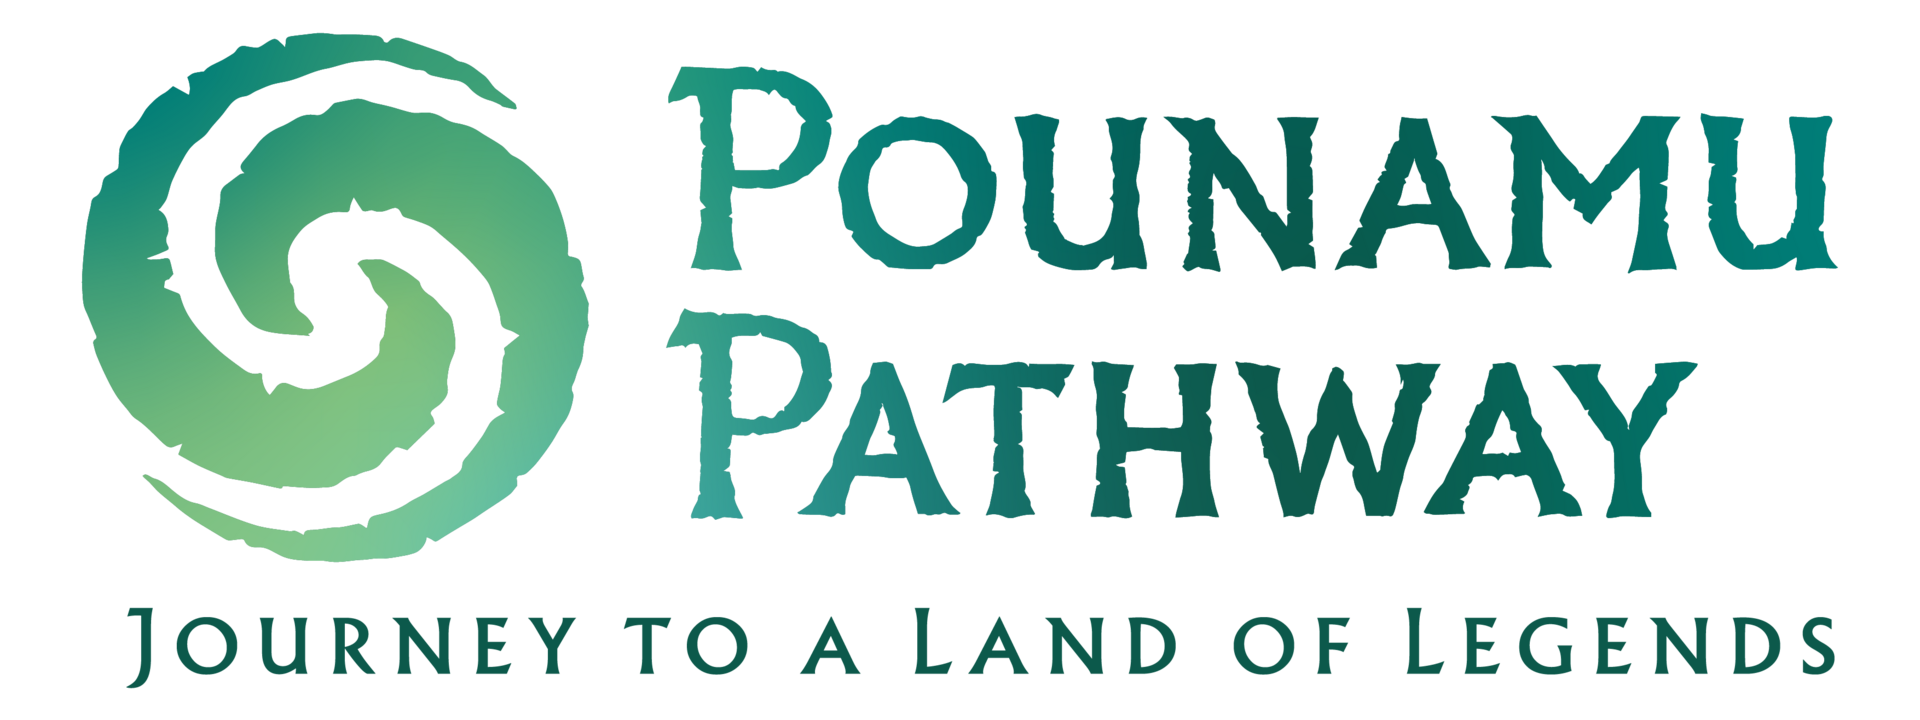 Logo - Pounamu Pathway RGB - Stacked-tagline-colour.png